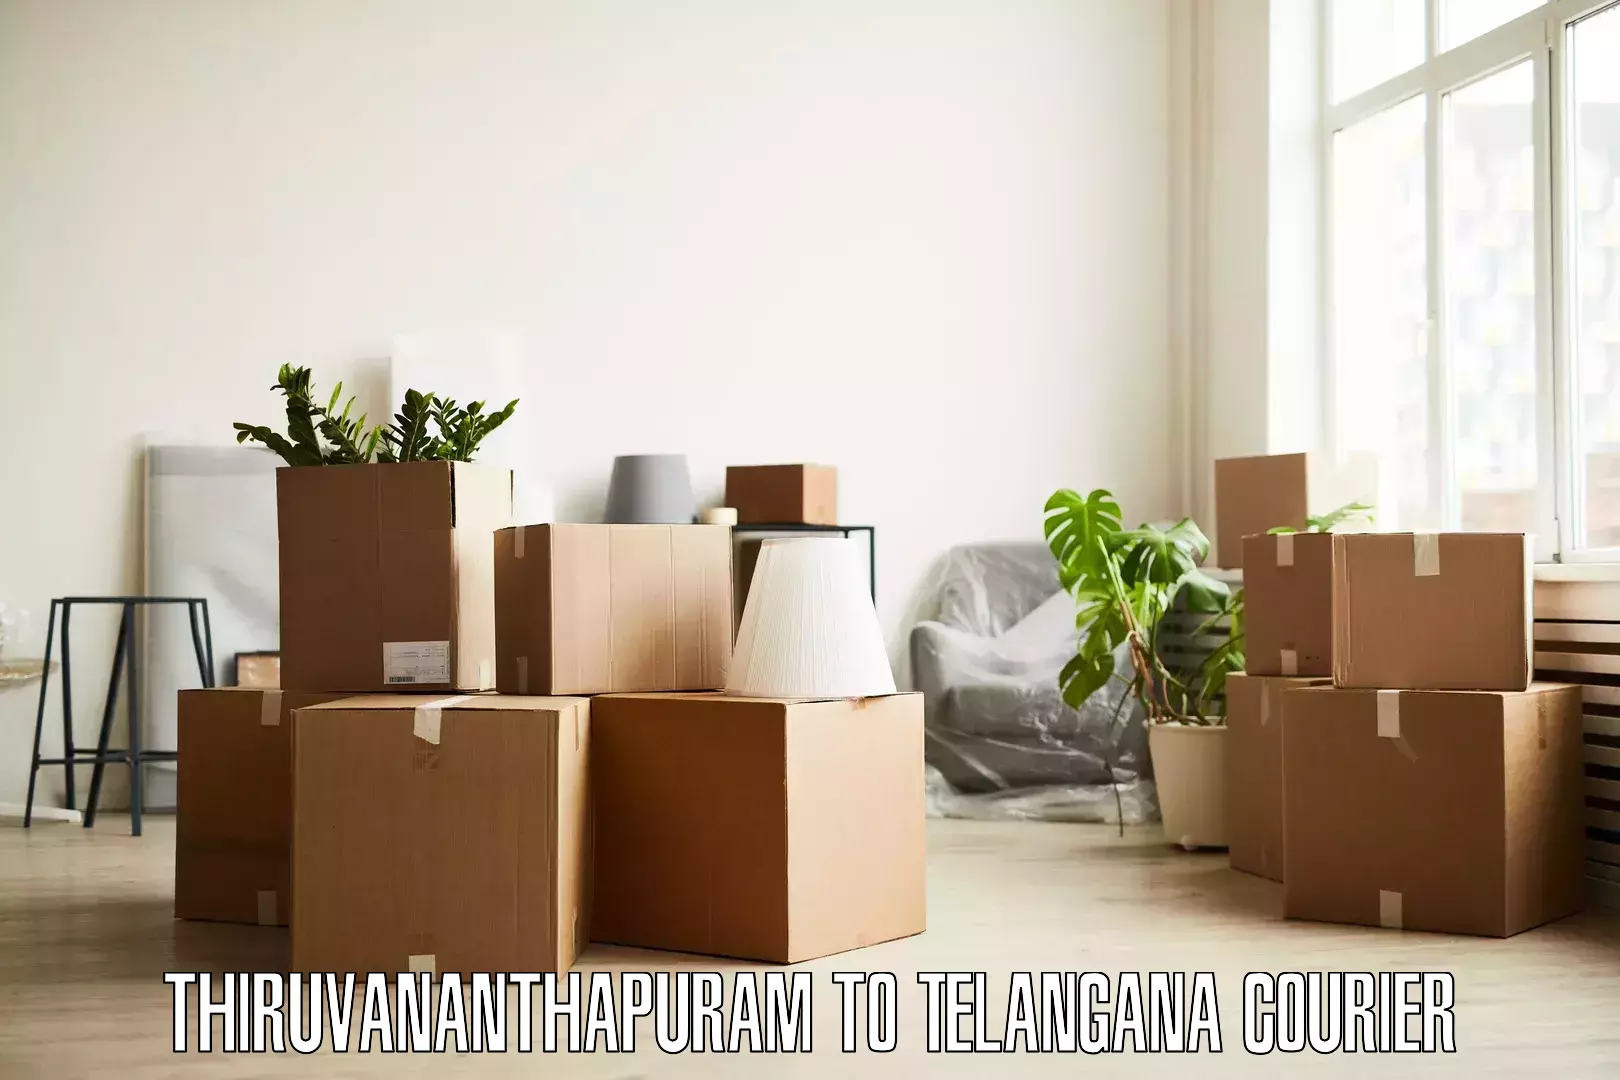 Furniture delivery service Thiruvananthapuram to Telangana